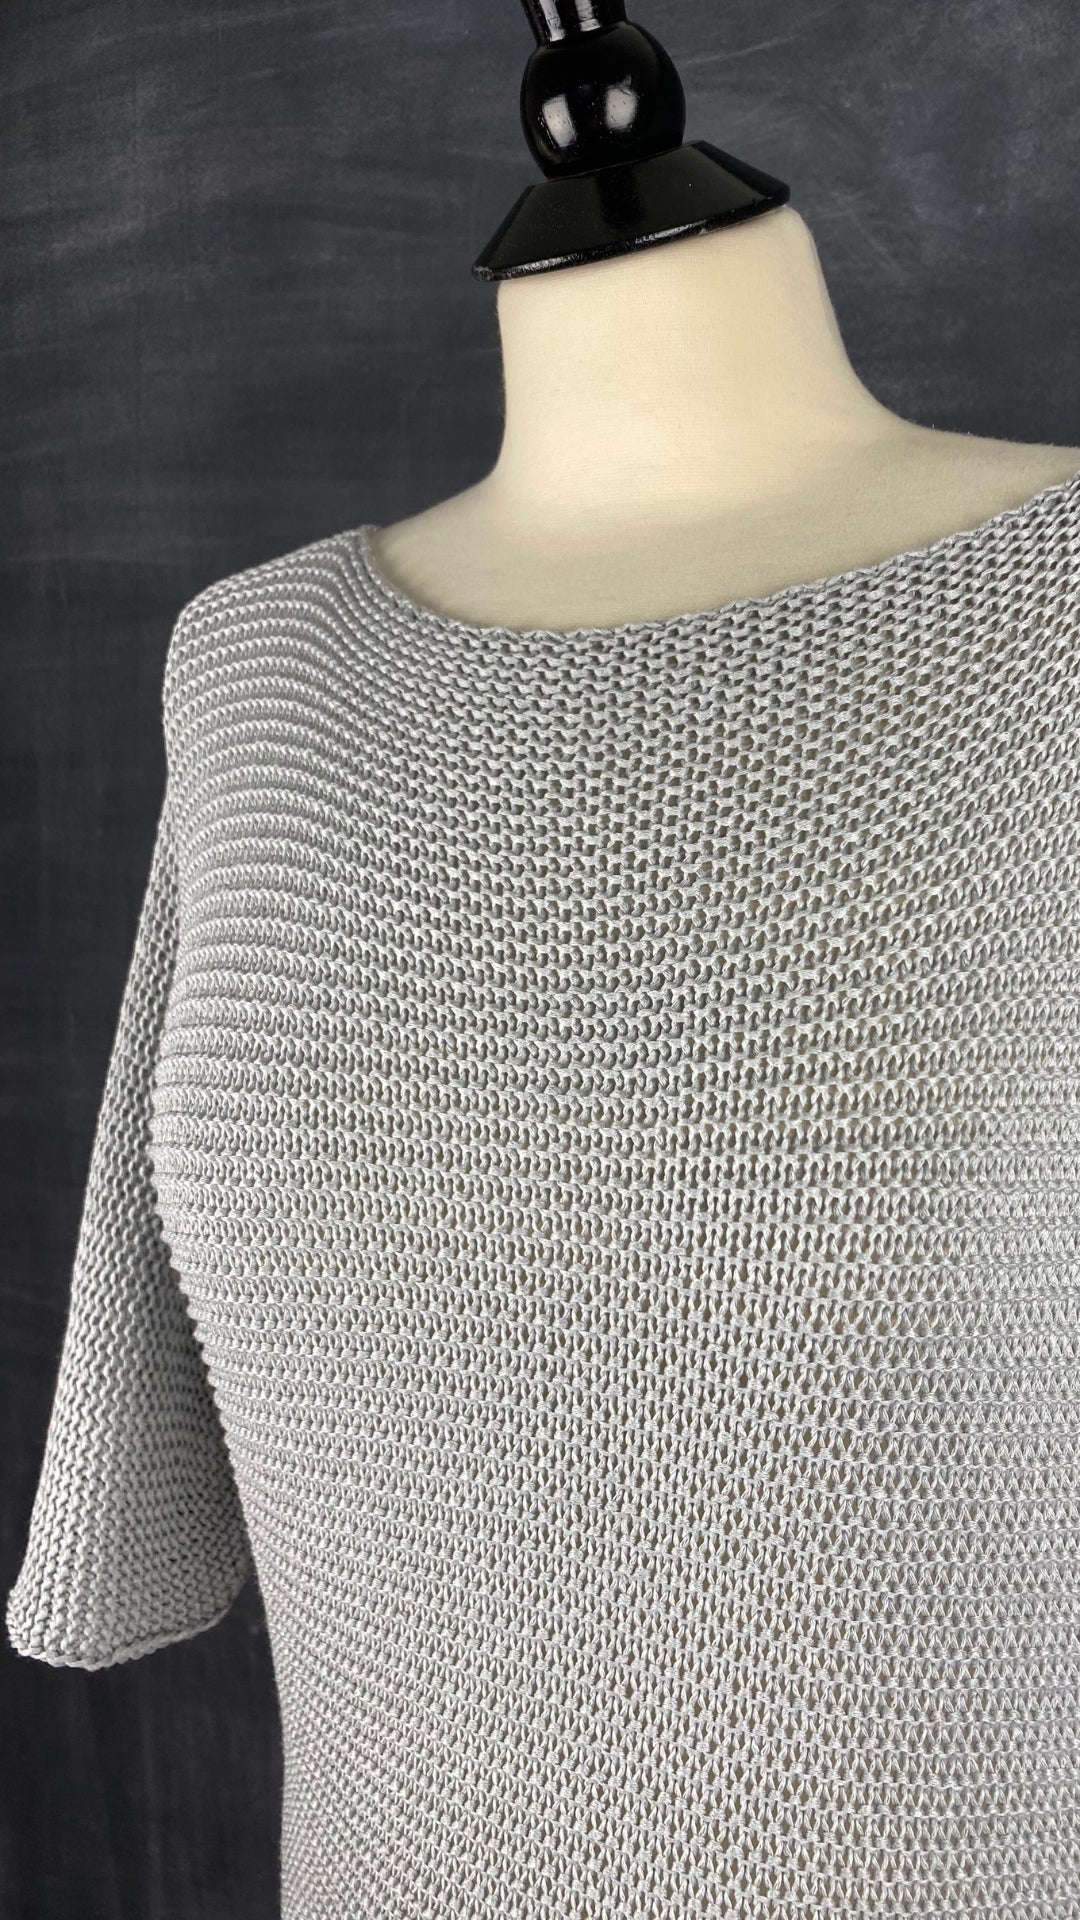 Chandail en tricot ajouré gris M Made in Italy, taille medium. Vue de l'encolure.